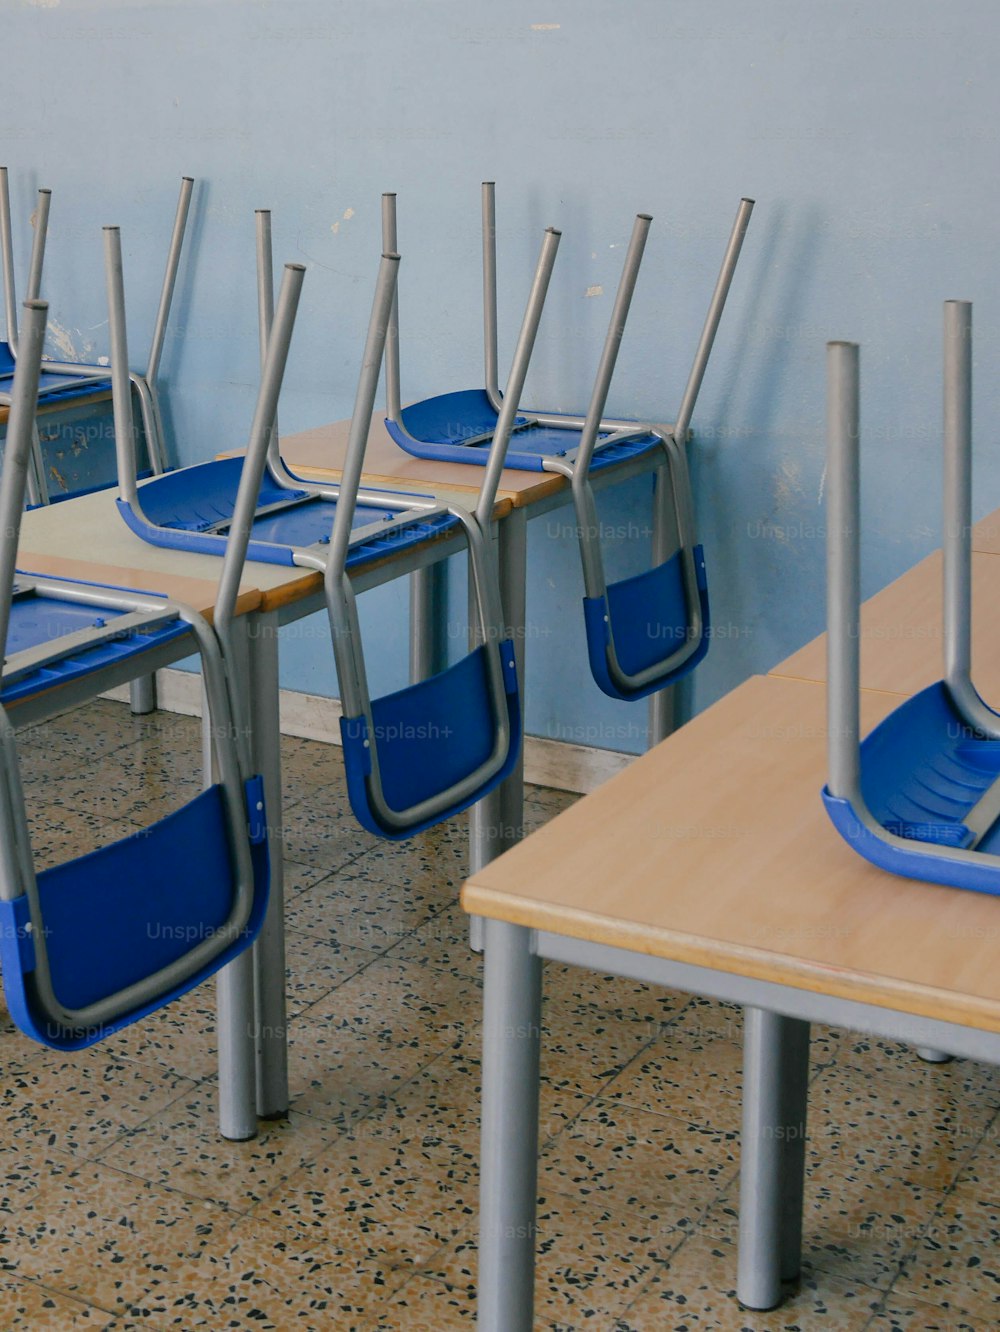 Una fila de sillas azules sentadas una al lado de la otra